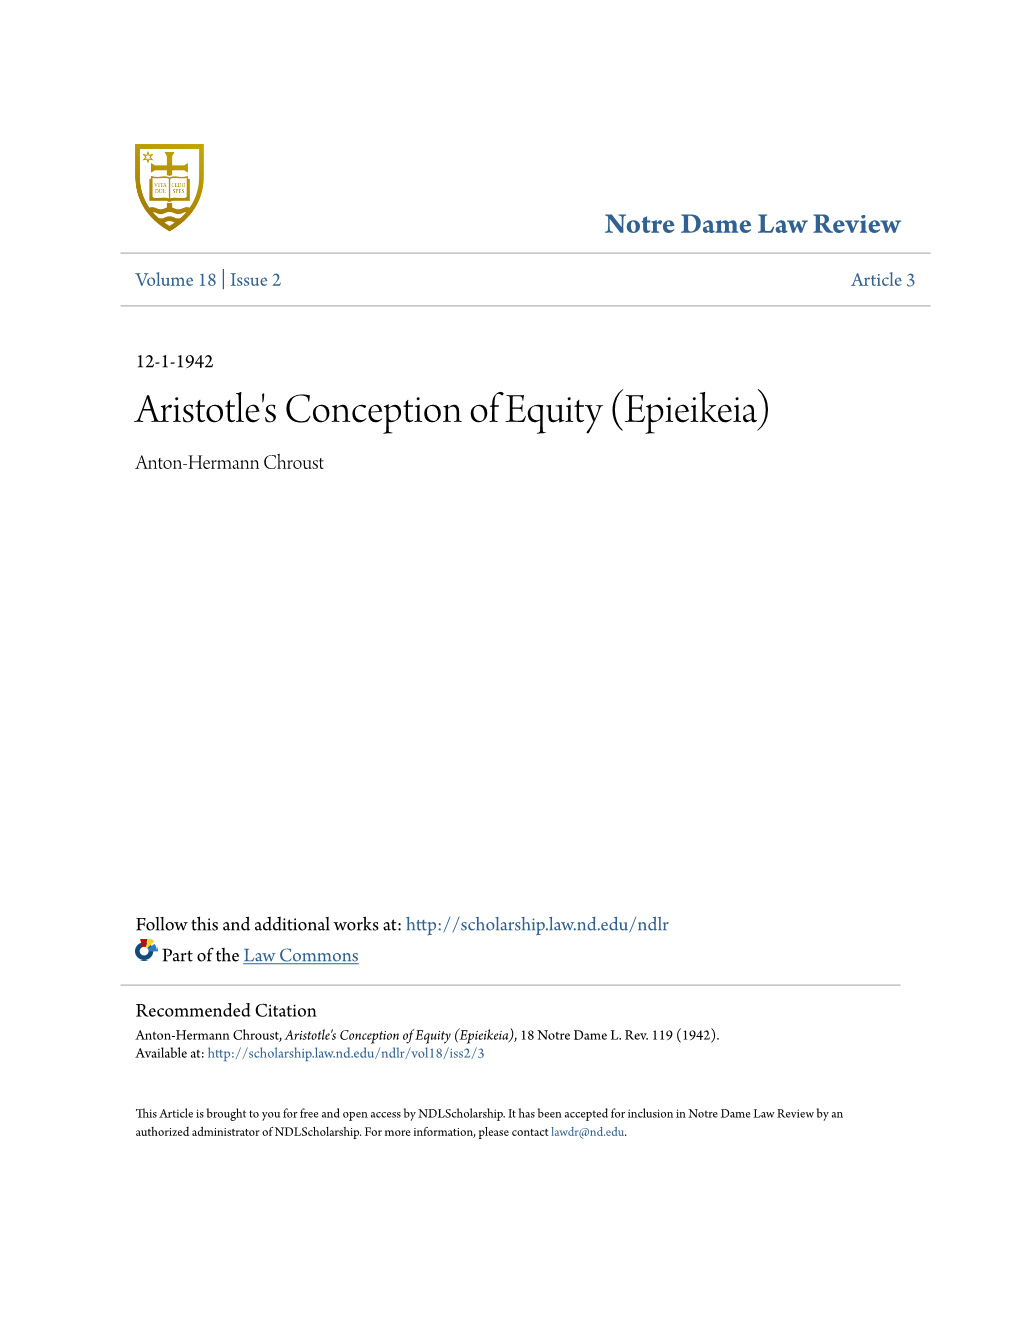 Aristotle's Conception of Equity (Epieikeia) Anton-Hermann Chroust